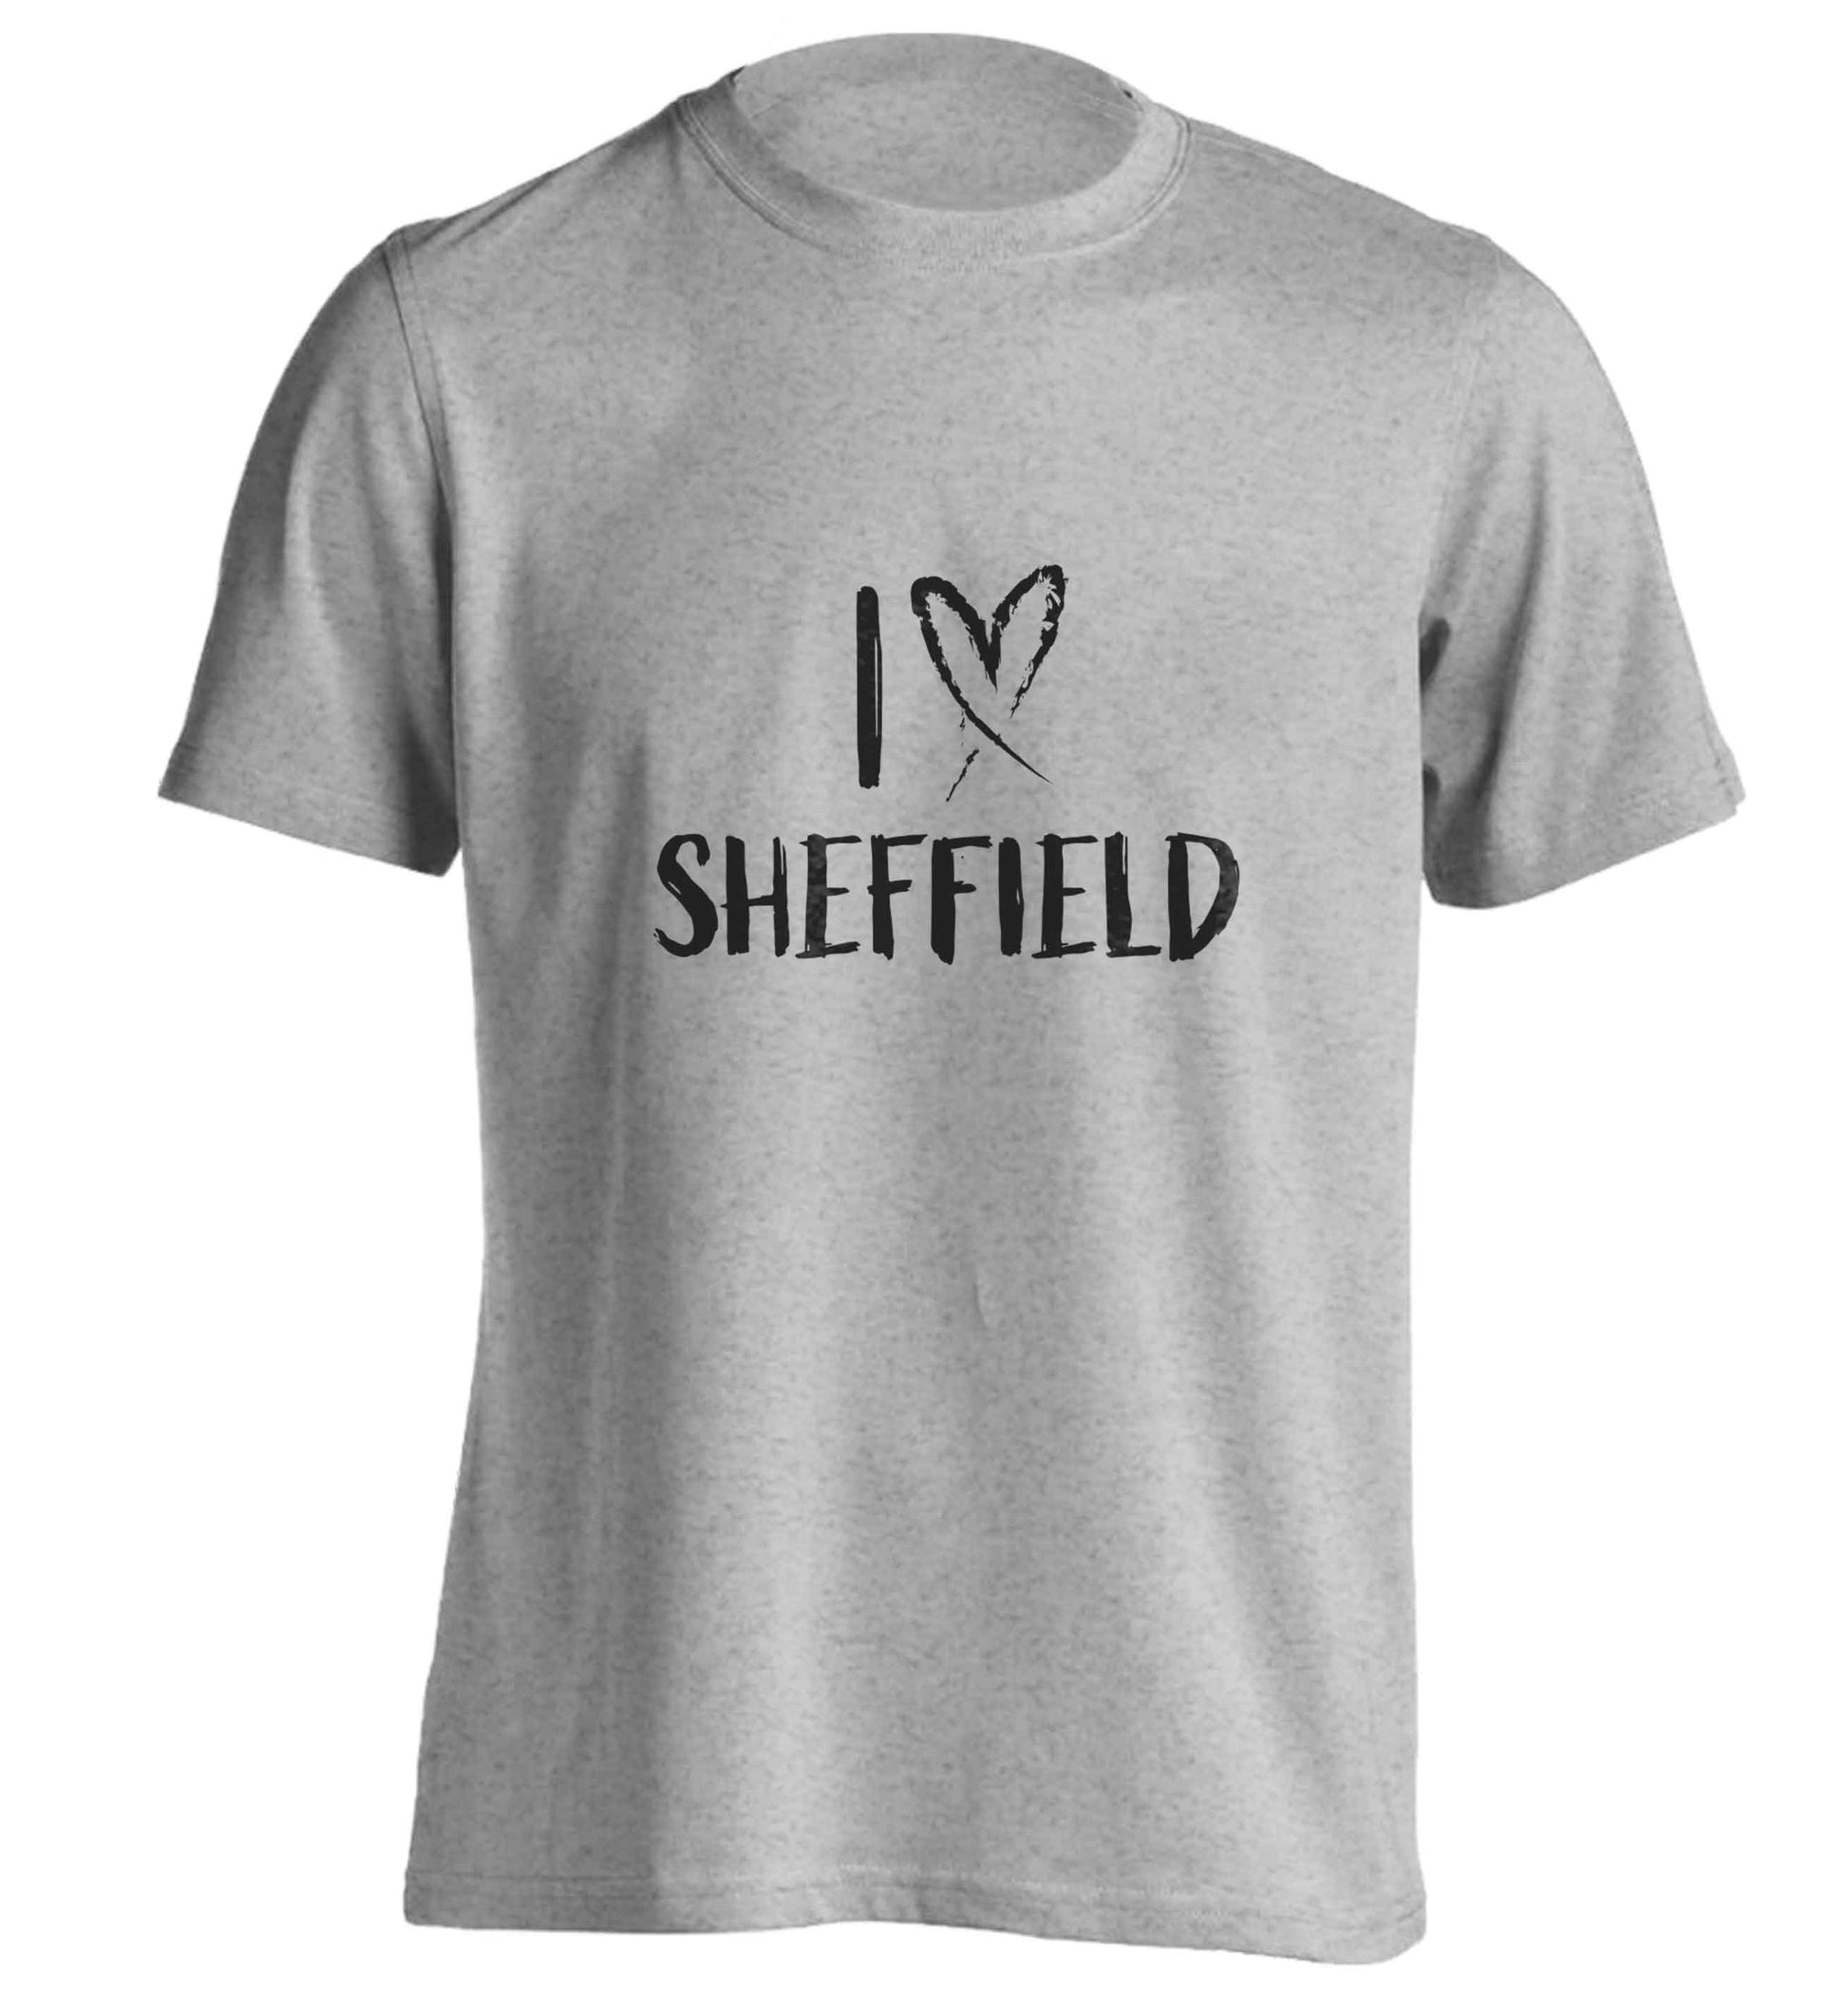 I love Sheffield adults unisex grey Tshirt 2XL